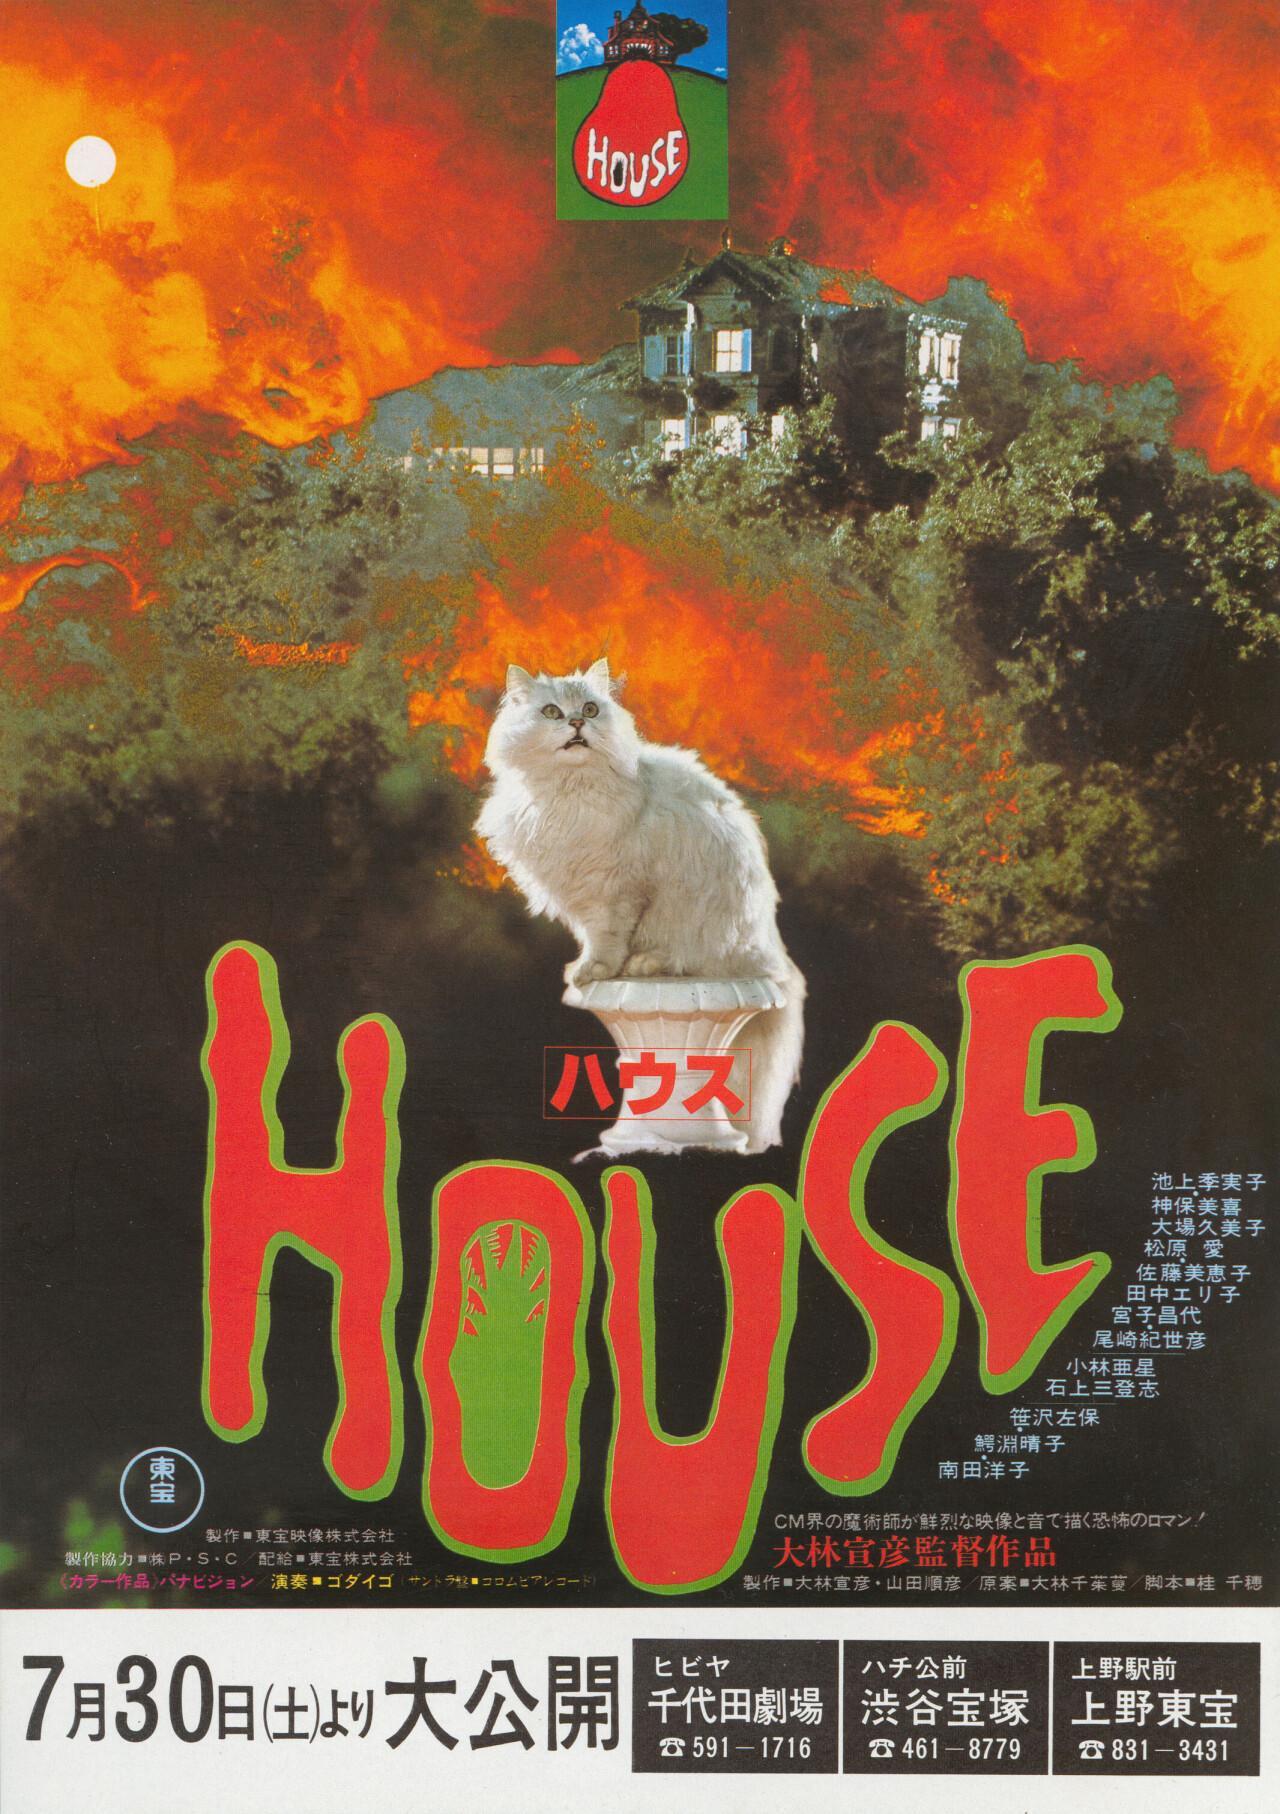 Дом (House, 1977), режиссёр Нобухико Обаяси, японский постер к фильму (ужасы, 1977 год)